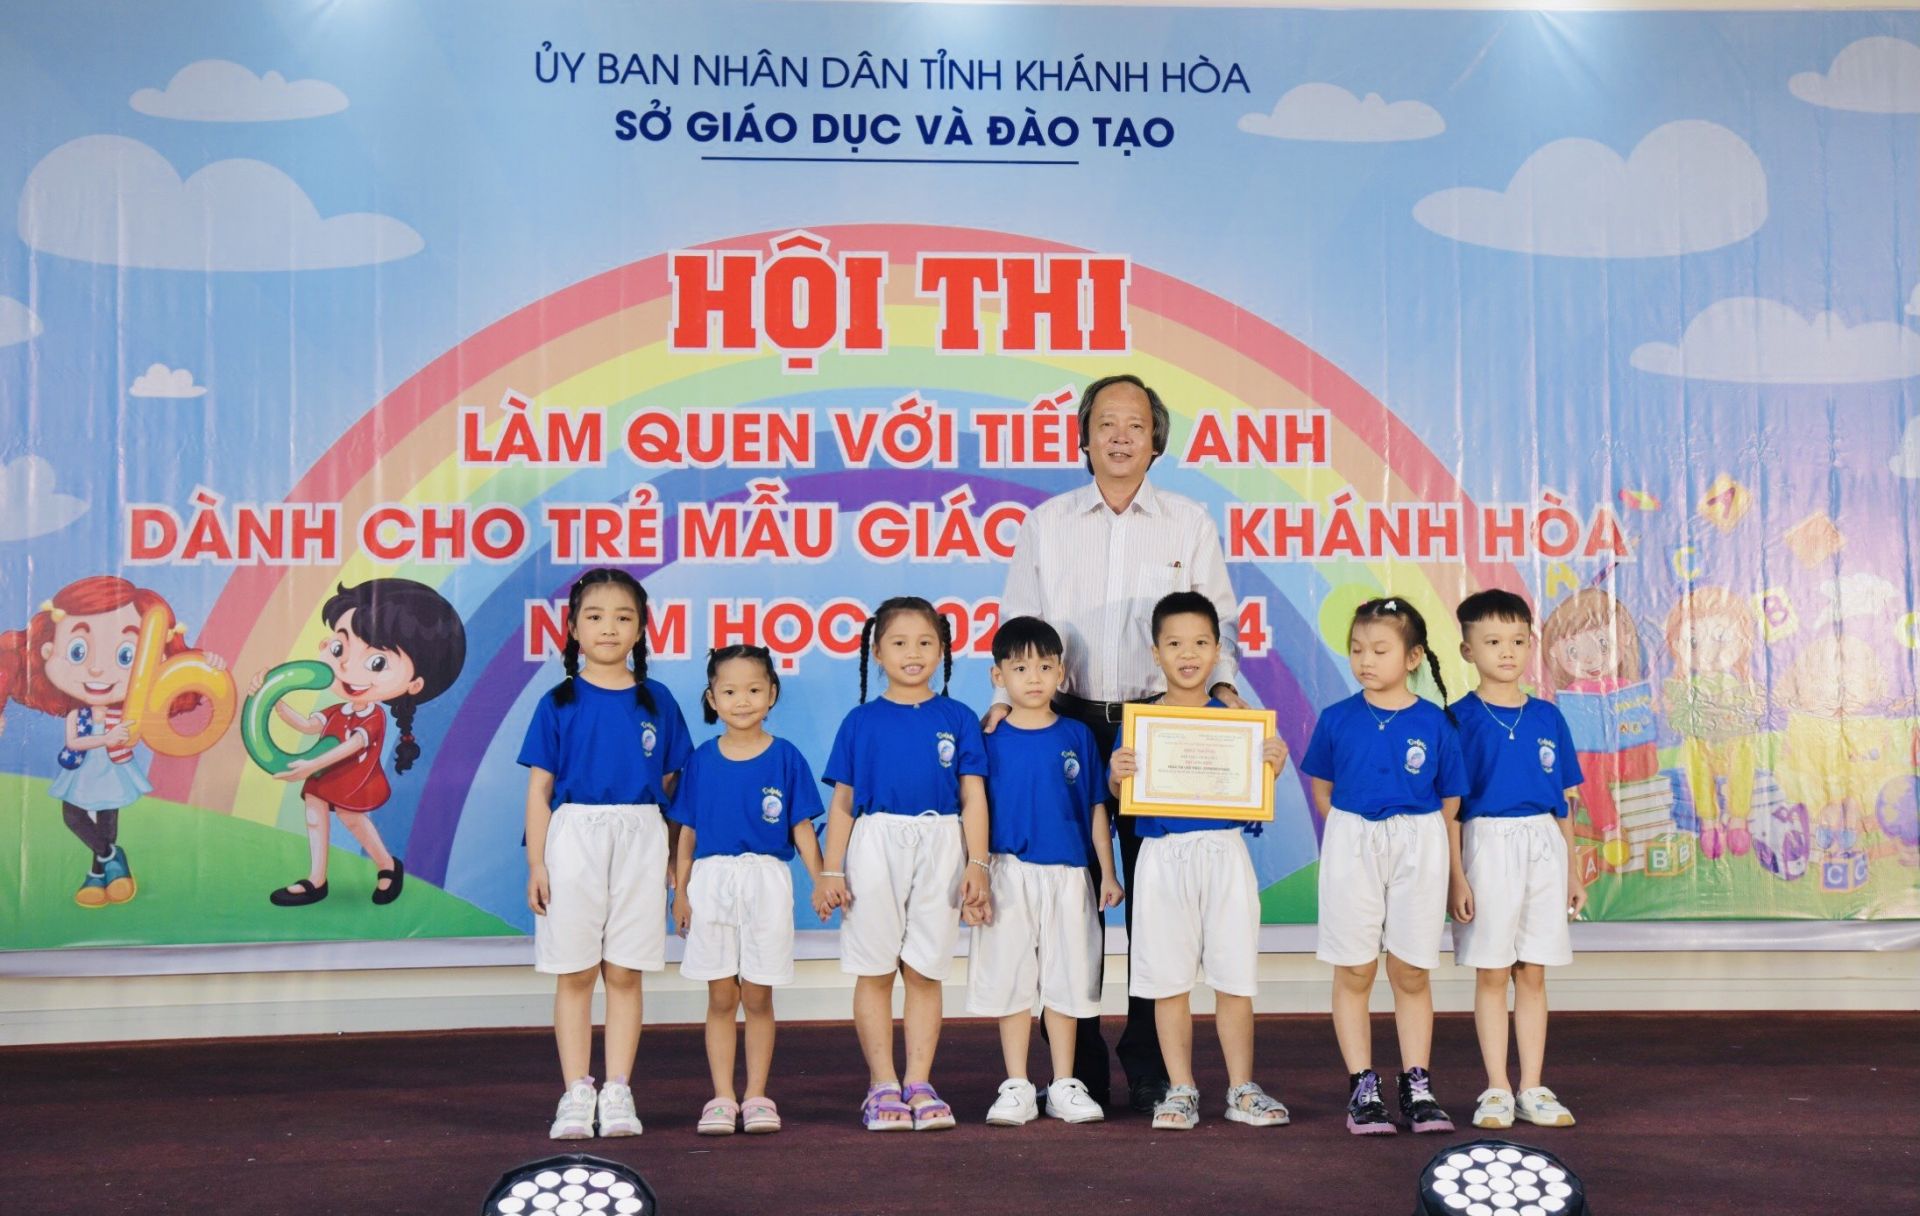 Chú Đỗ Hữu Quỳnh - Phó Giám đốc Sở Giáo dục và Đào tạo tỉnh Khánh Hòa trao Giải Nhất tập thể ở phần thi giới thiệu cho đội Cam Ranh 2.